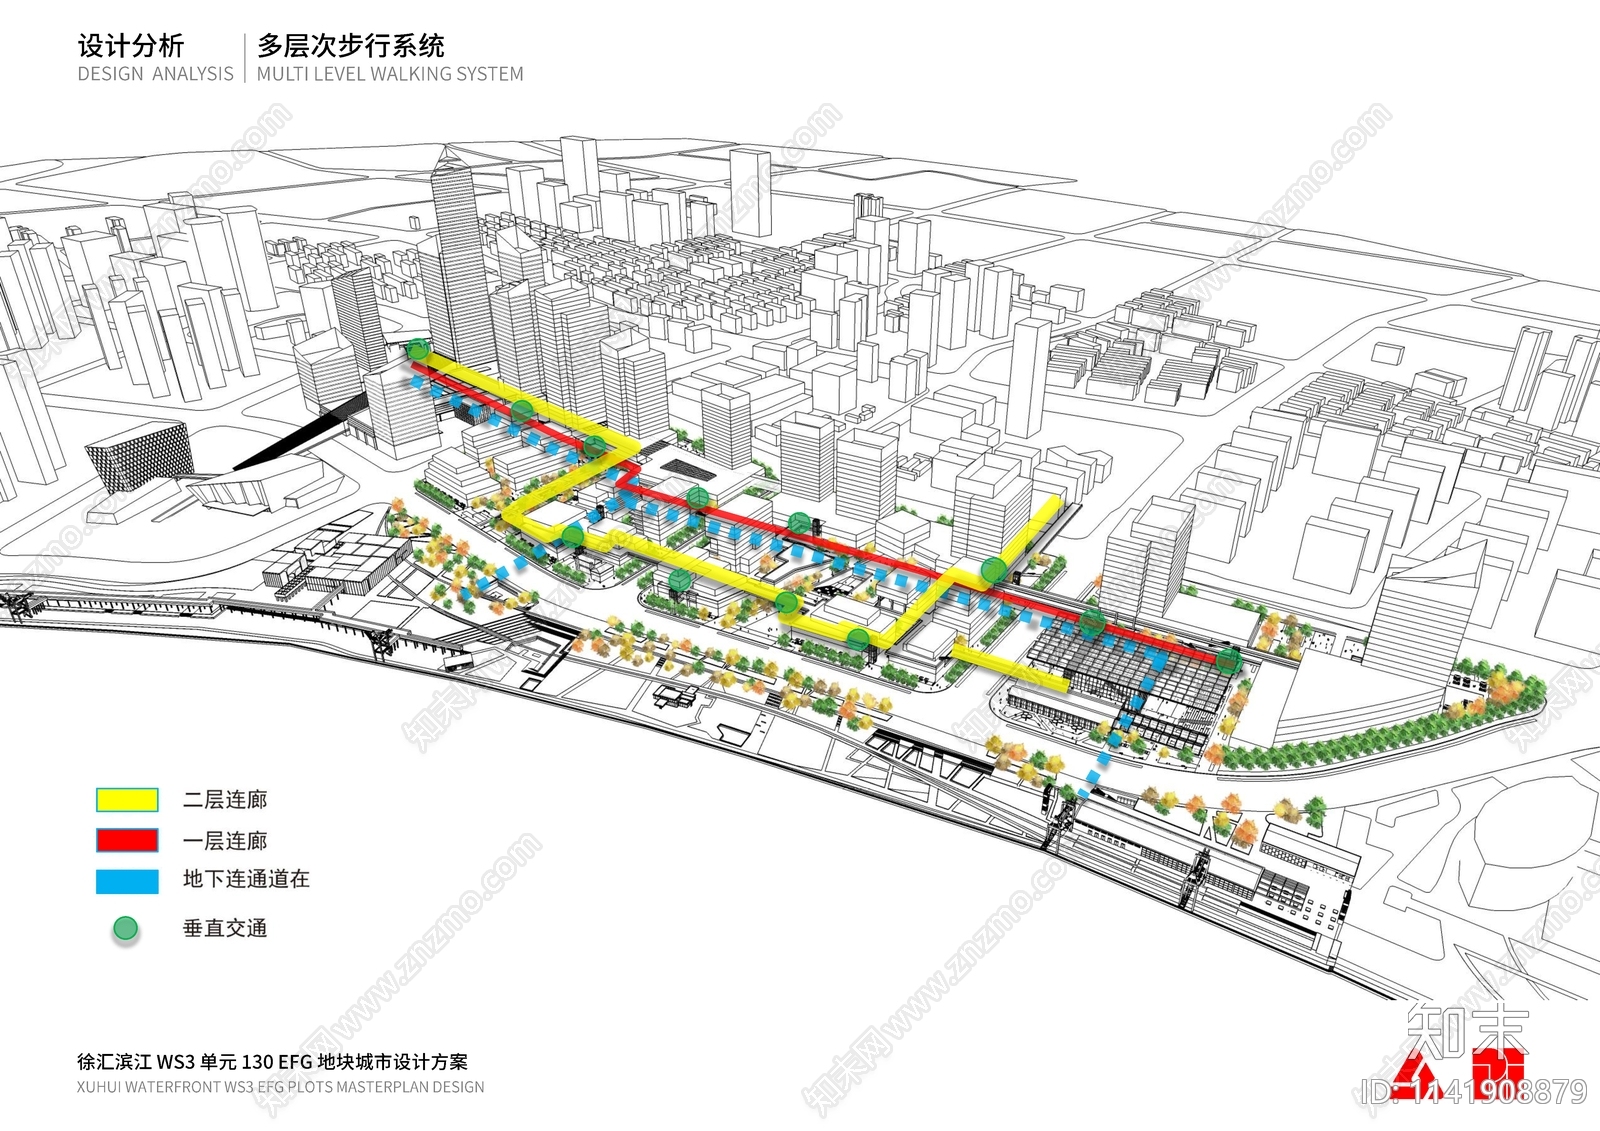 上海徐汇WS3单元城市设计方案文本下载【ID:1141908879】